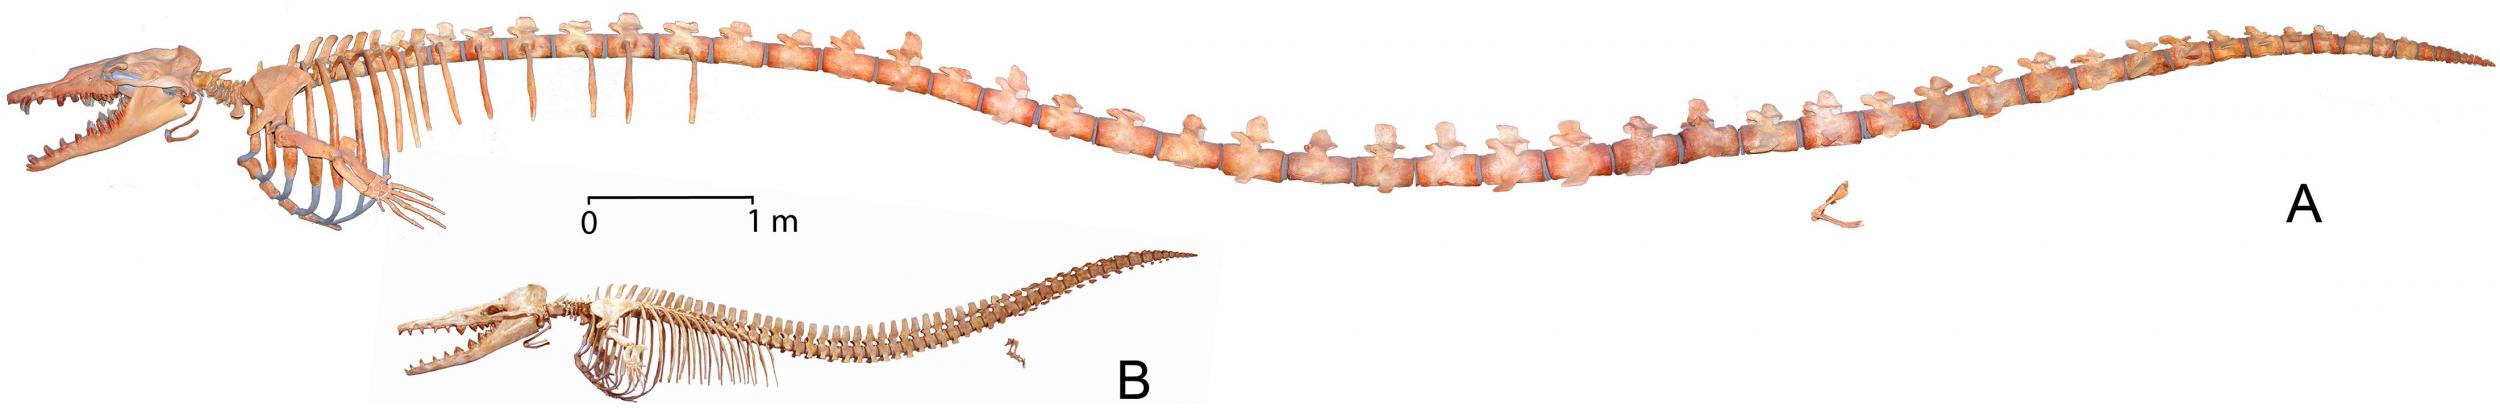 basilosaurus-skeleton.jpg